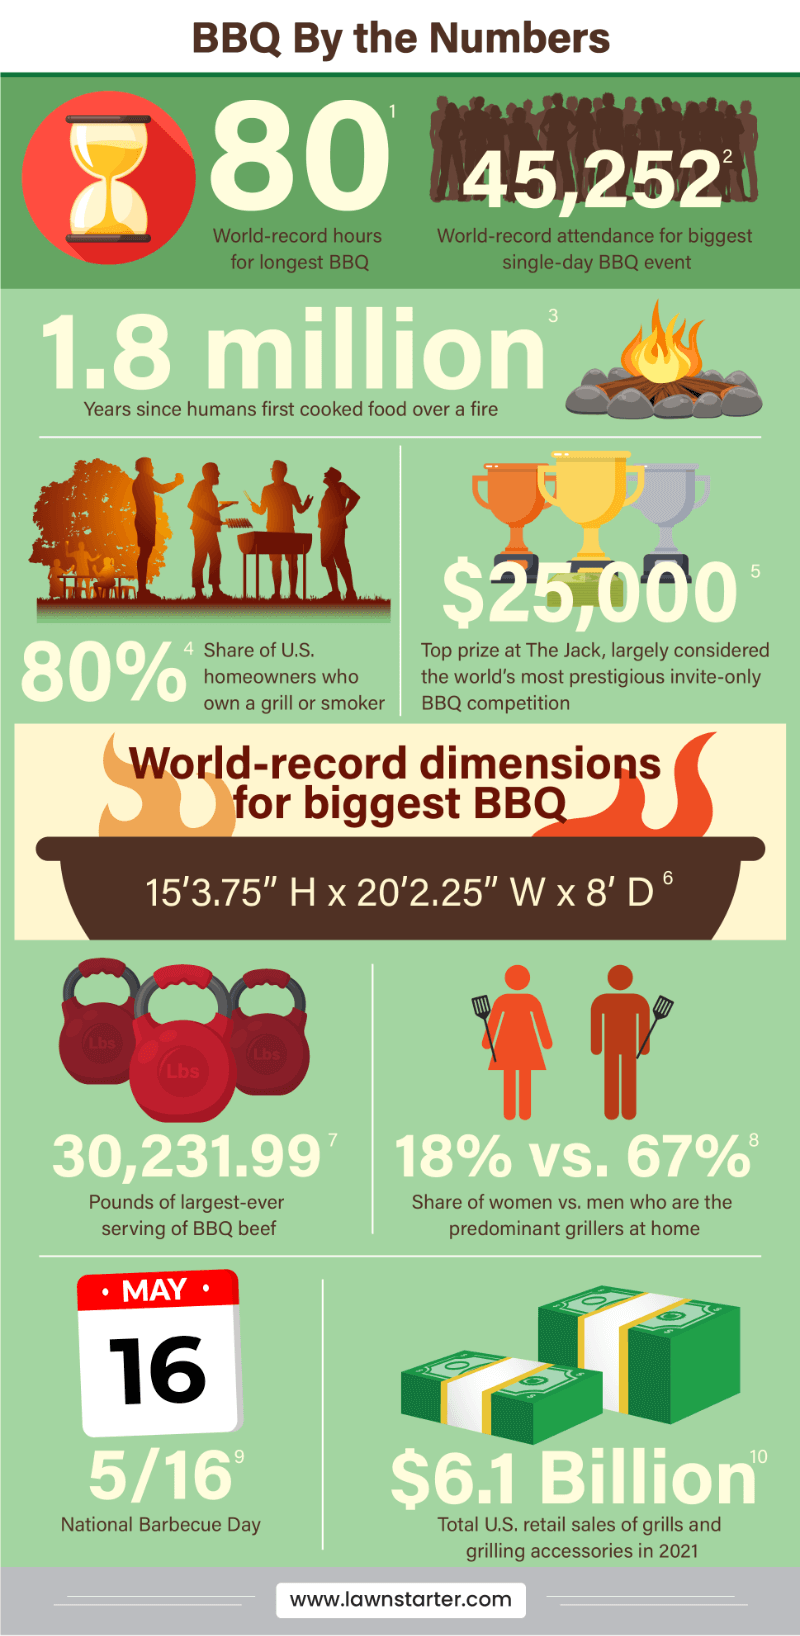 数字信息图是基于世界纪录的时间，拥有烧烤架的房主，顶级奖品和更多!